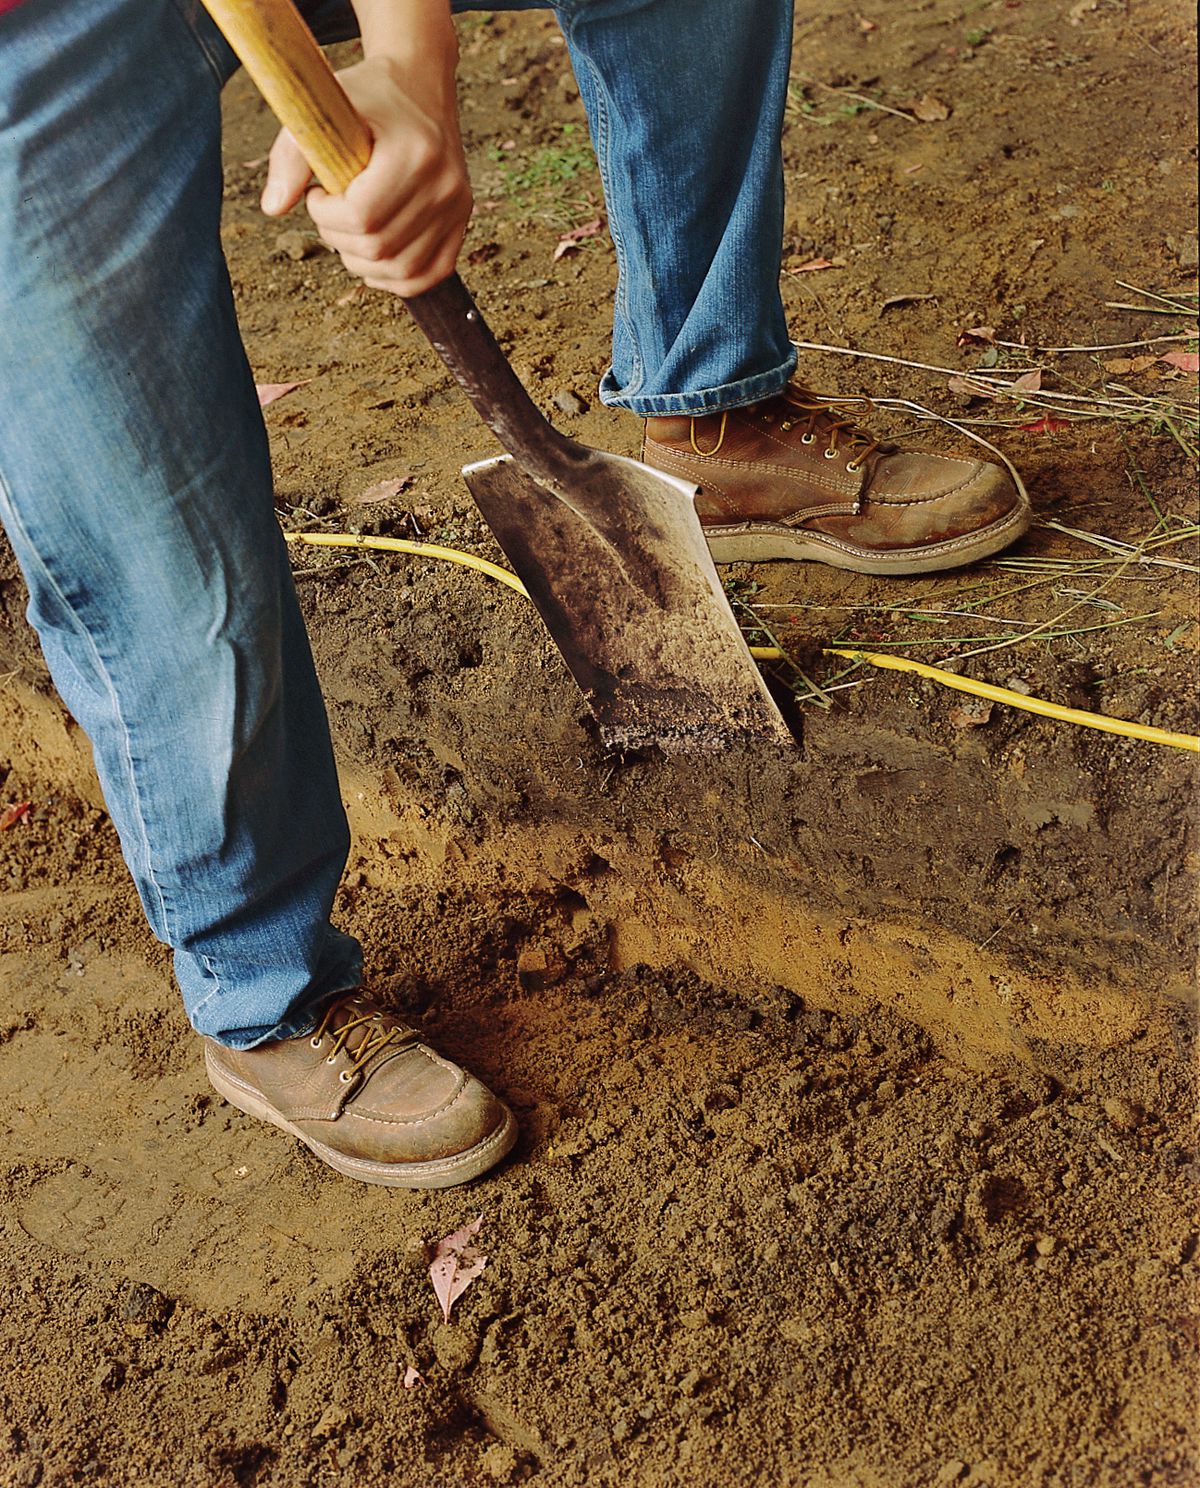 Man Digging Soil With Spade To Make Brick Path